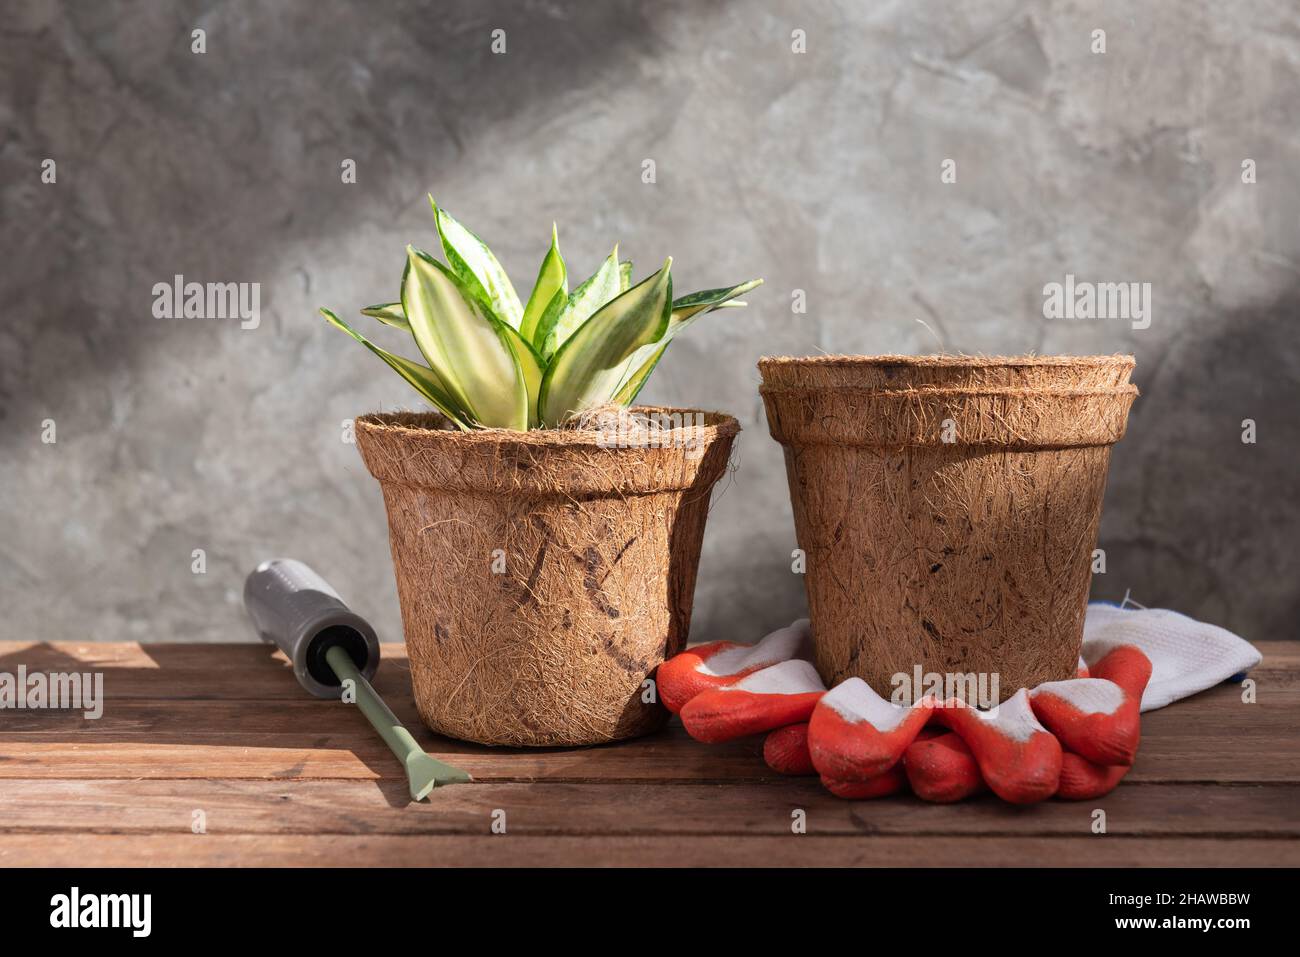 Planta de serpiente o planta de Sanseviera laurentii en pote de fibra de coco sobre fondo de madera Foto de stock